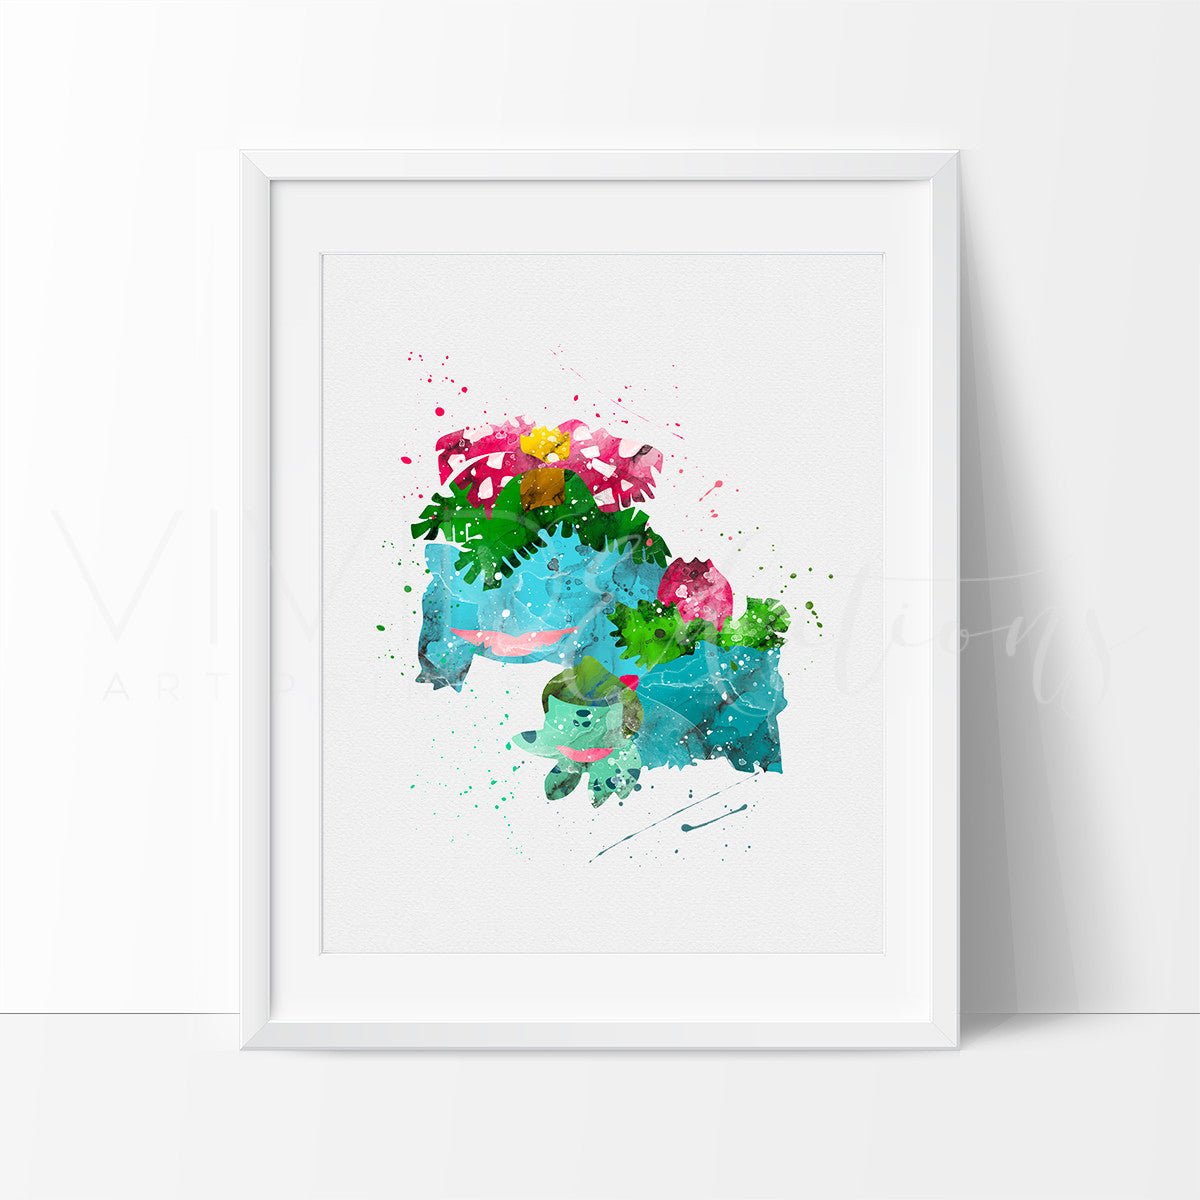 Bulbasaur, Ivysaur & Venusaur, Pokemon Evolution Watercolor Art Print Print - VividEditions